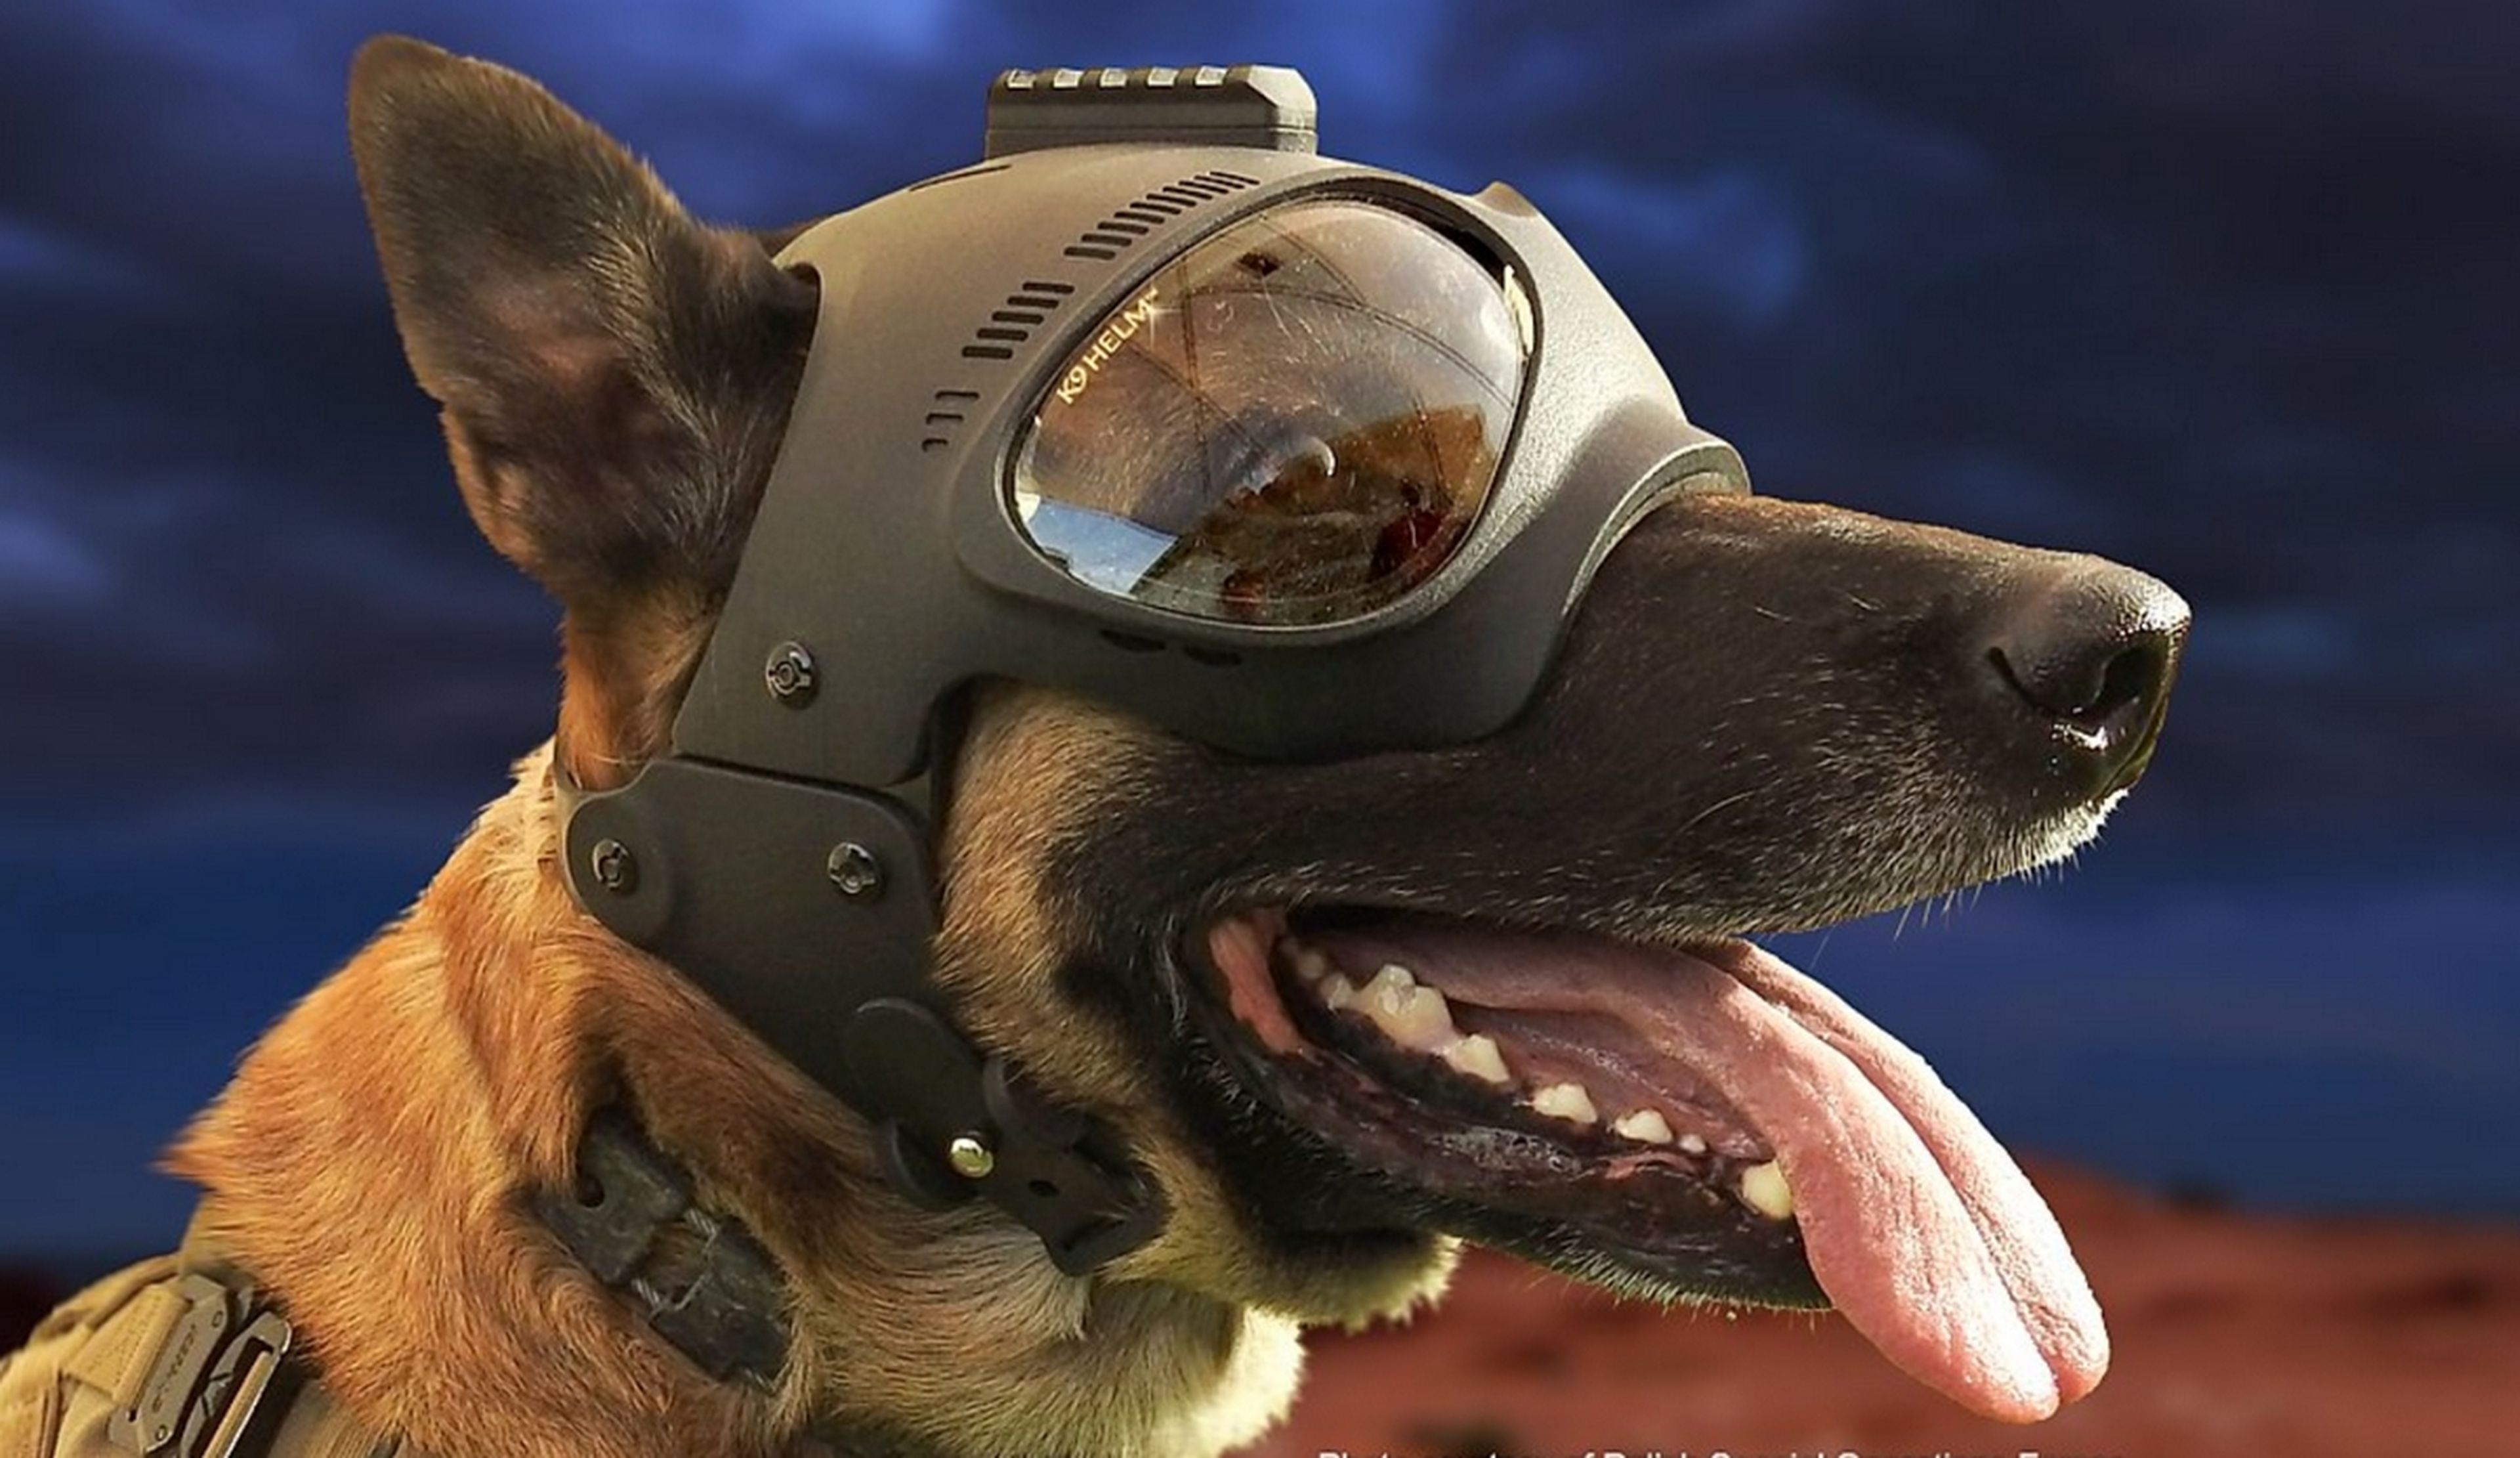 K9 Helm, el casco protector para perros que trabajan en profesiones peligrosas